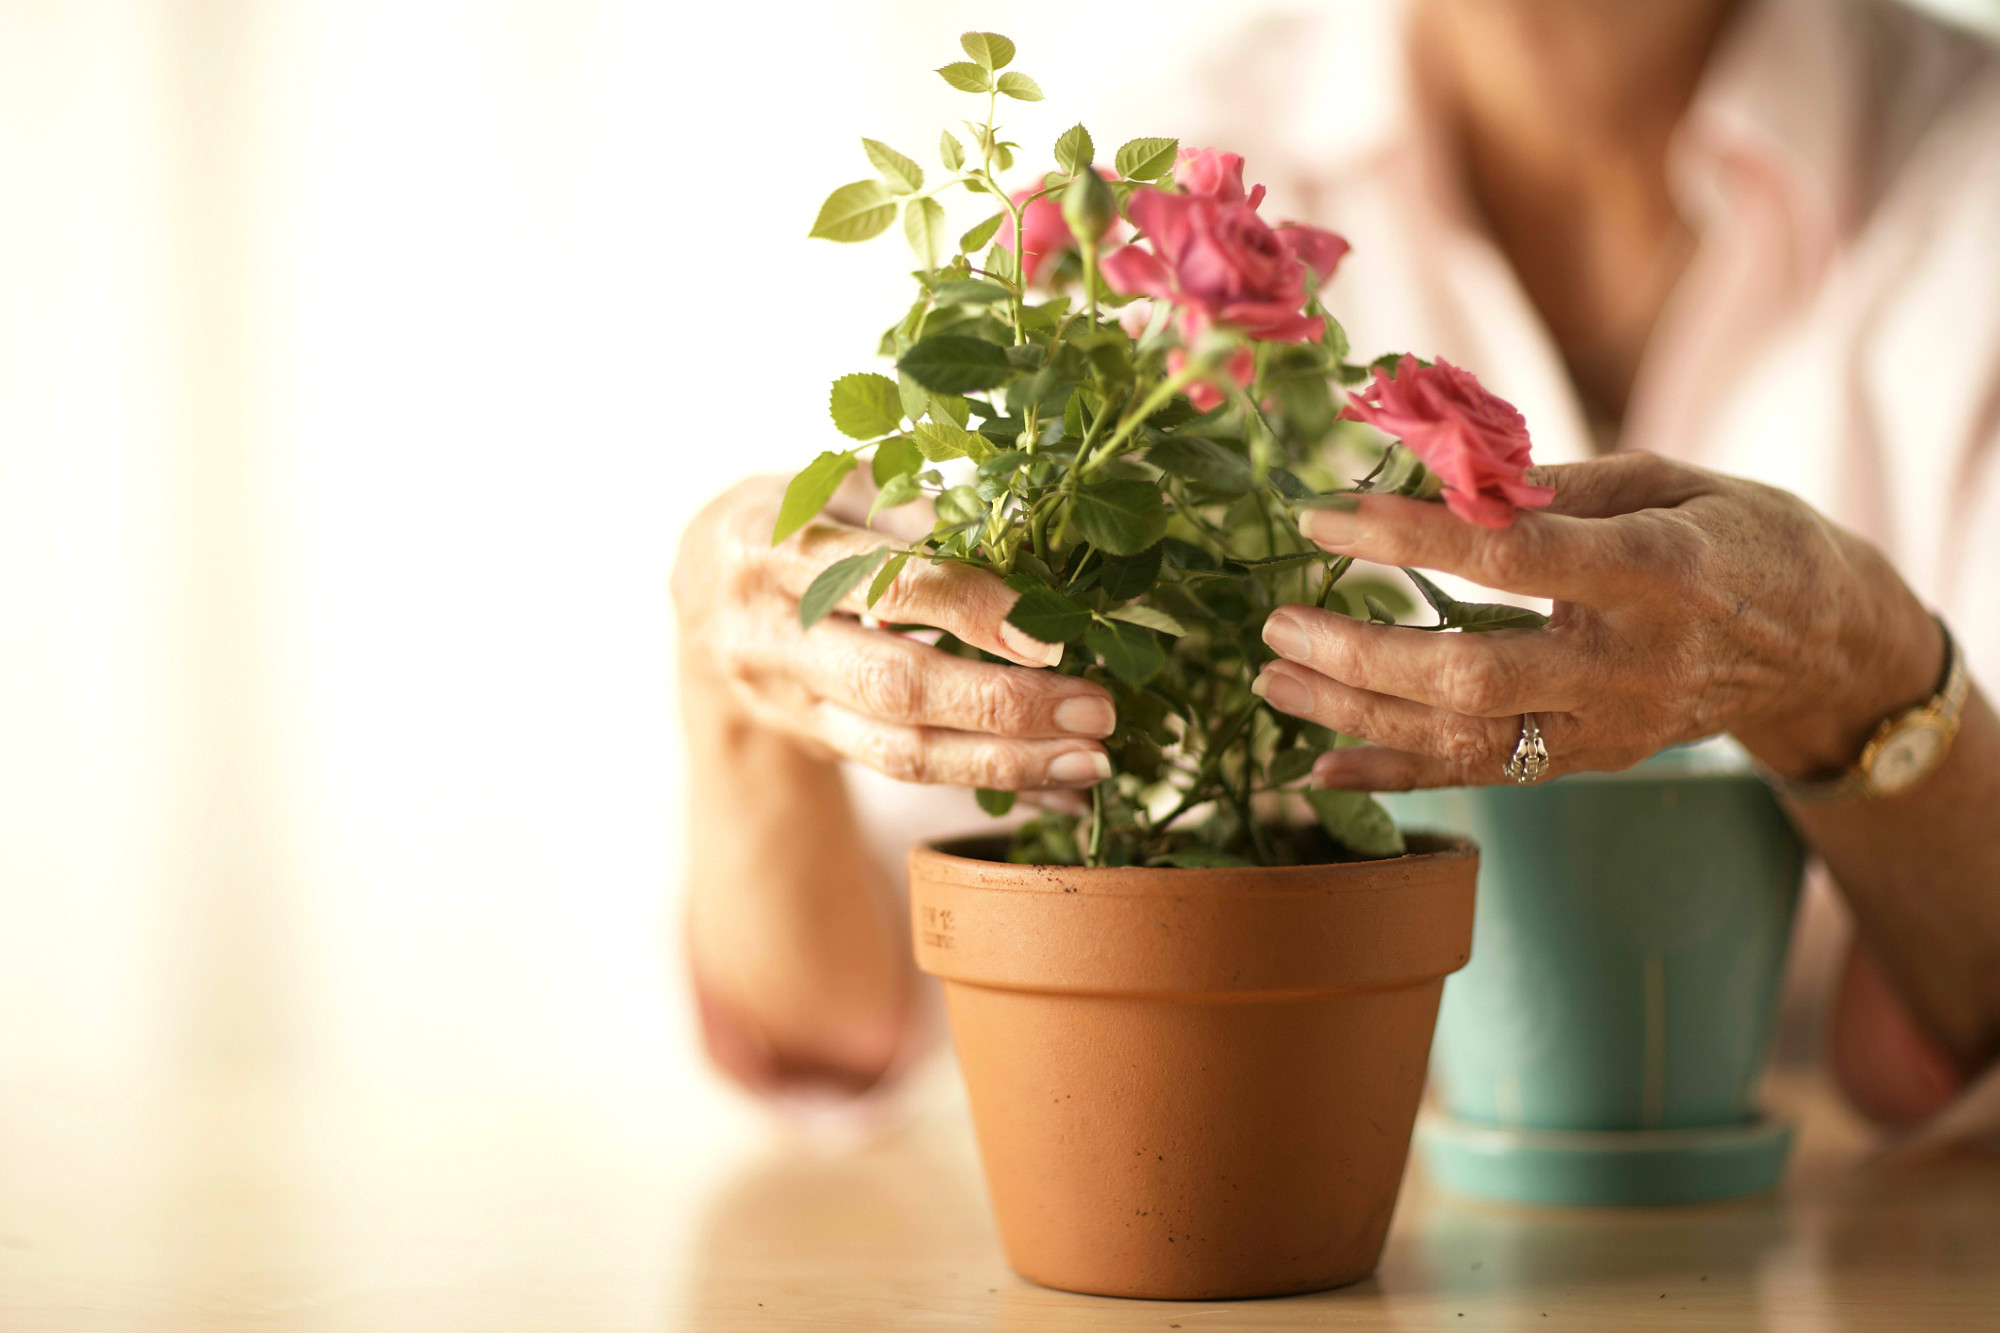 [Растения в доме] как ухаживать за новым цветком после покупки?